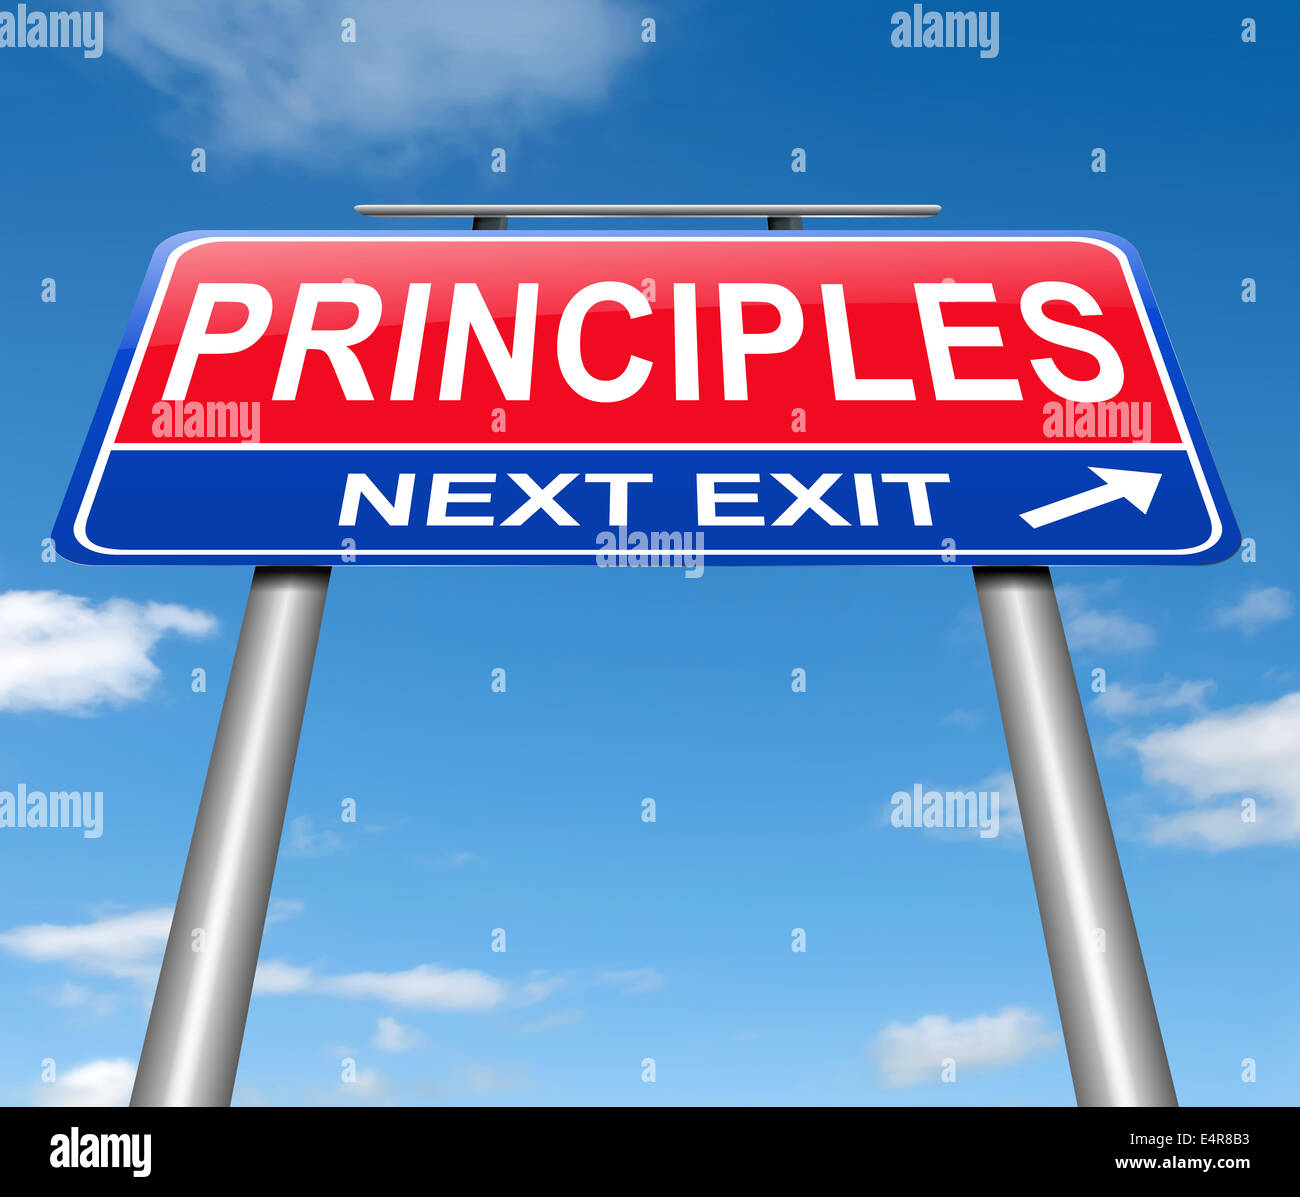 Principles concept. Stock Photo